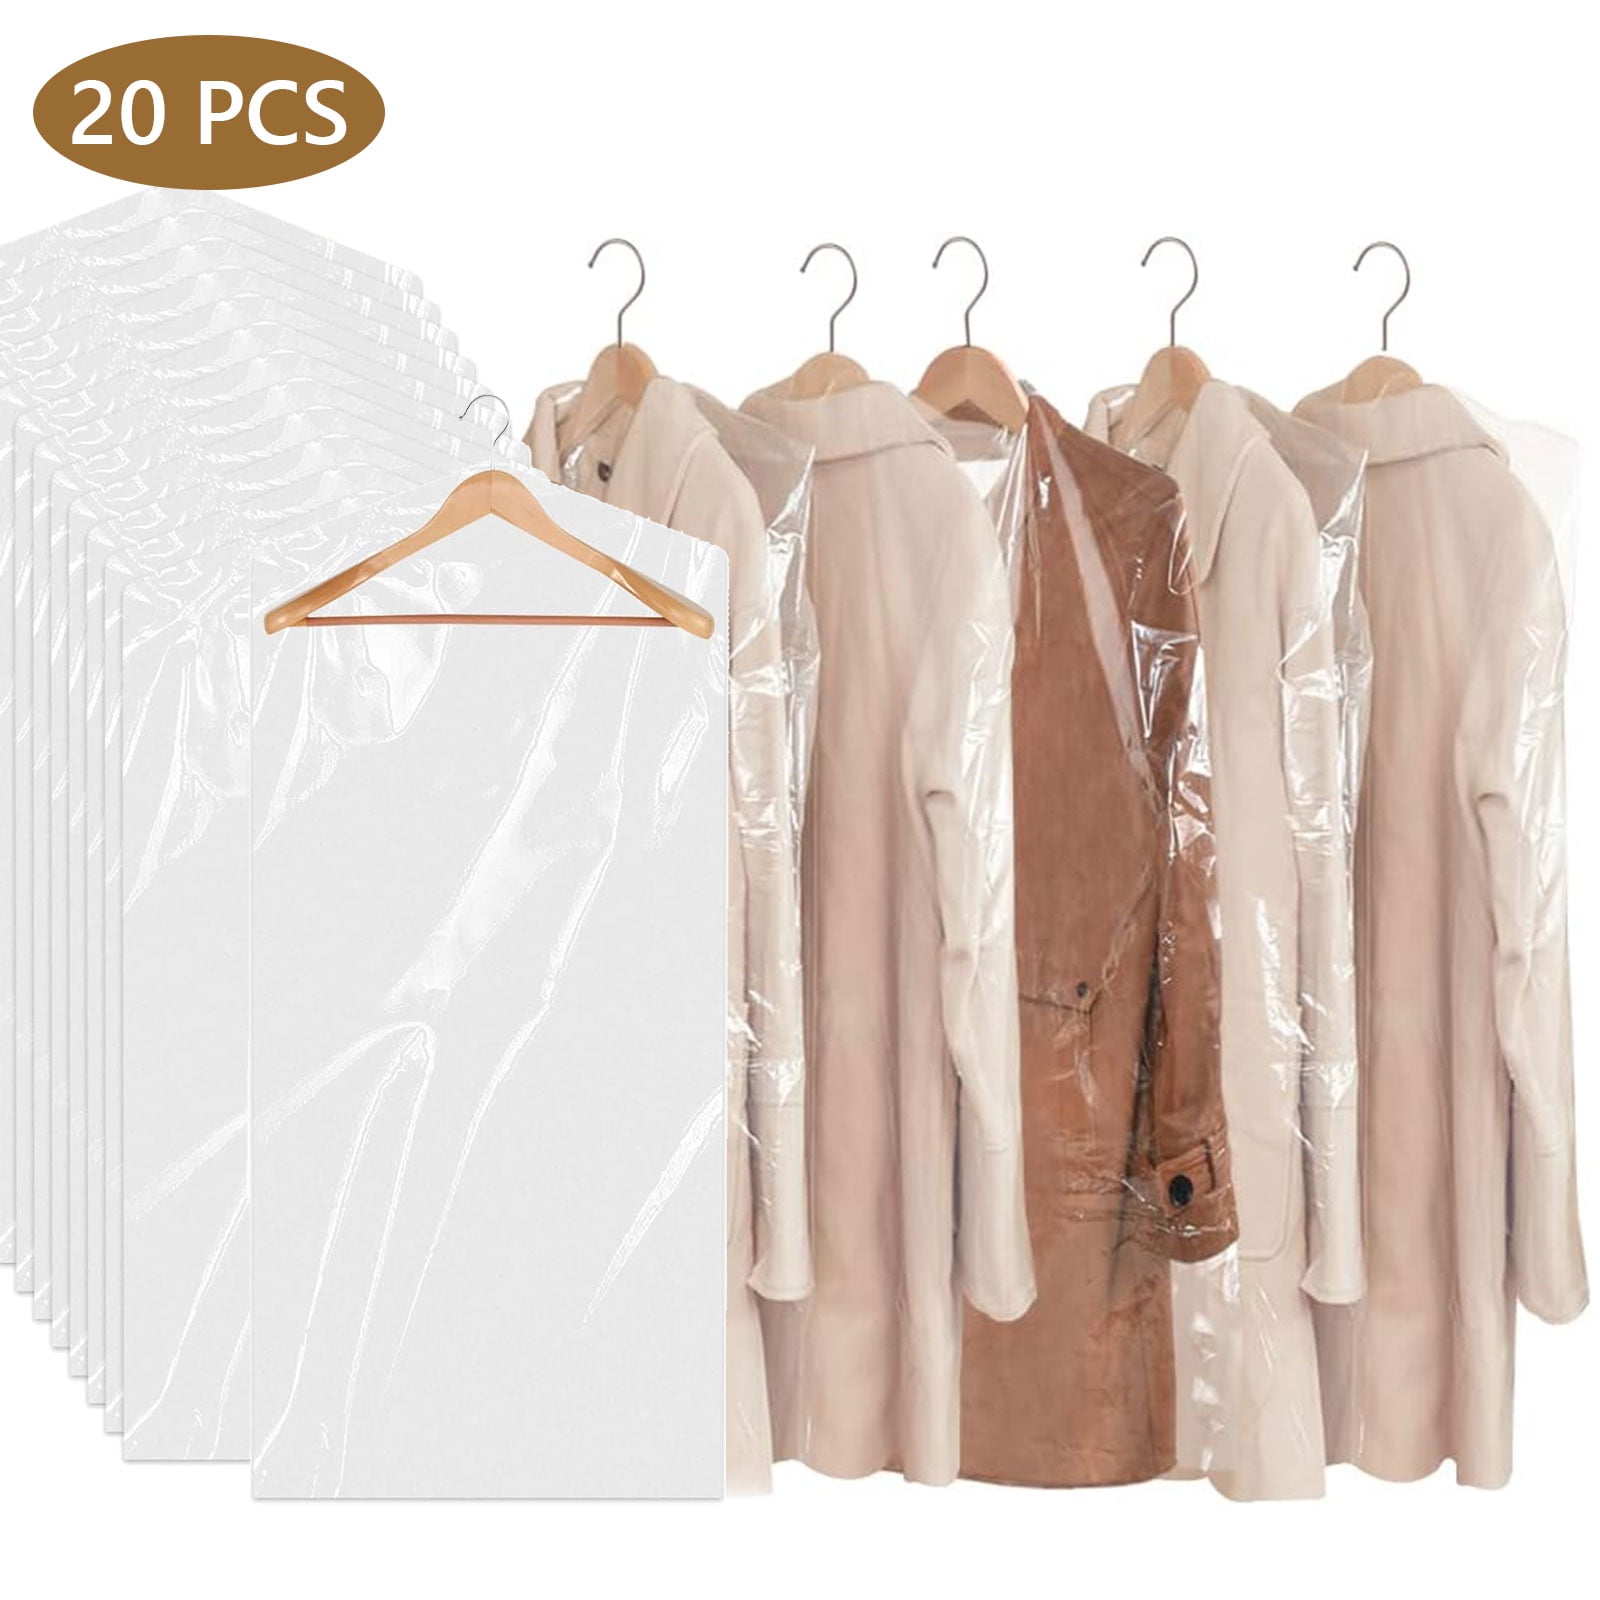 homeminda Moth Proof Garment Bags 60in Long Dress Clear